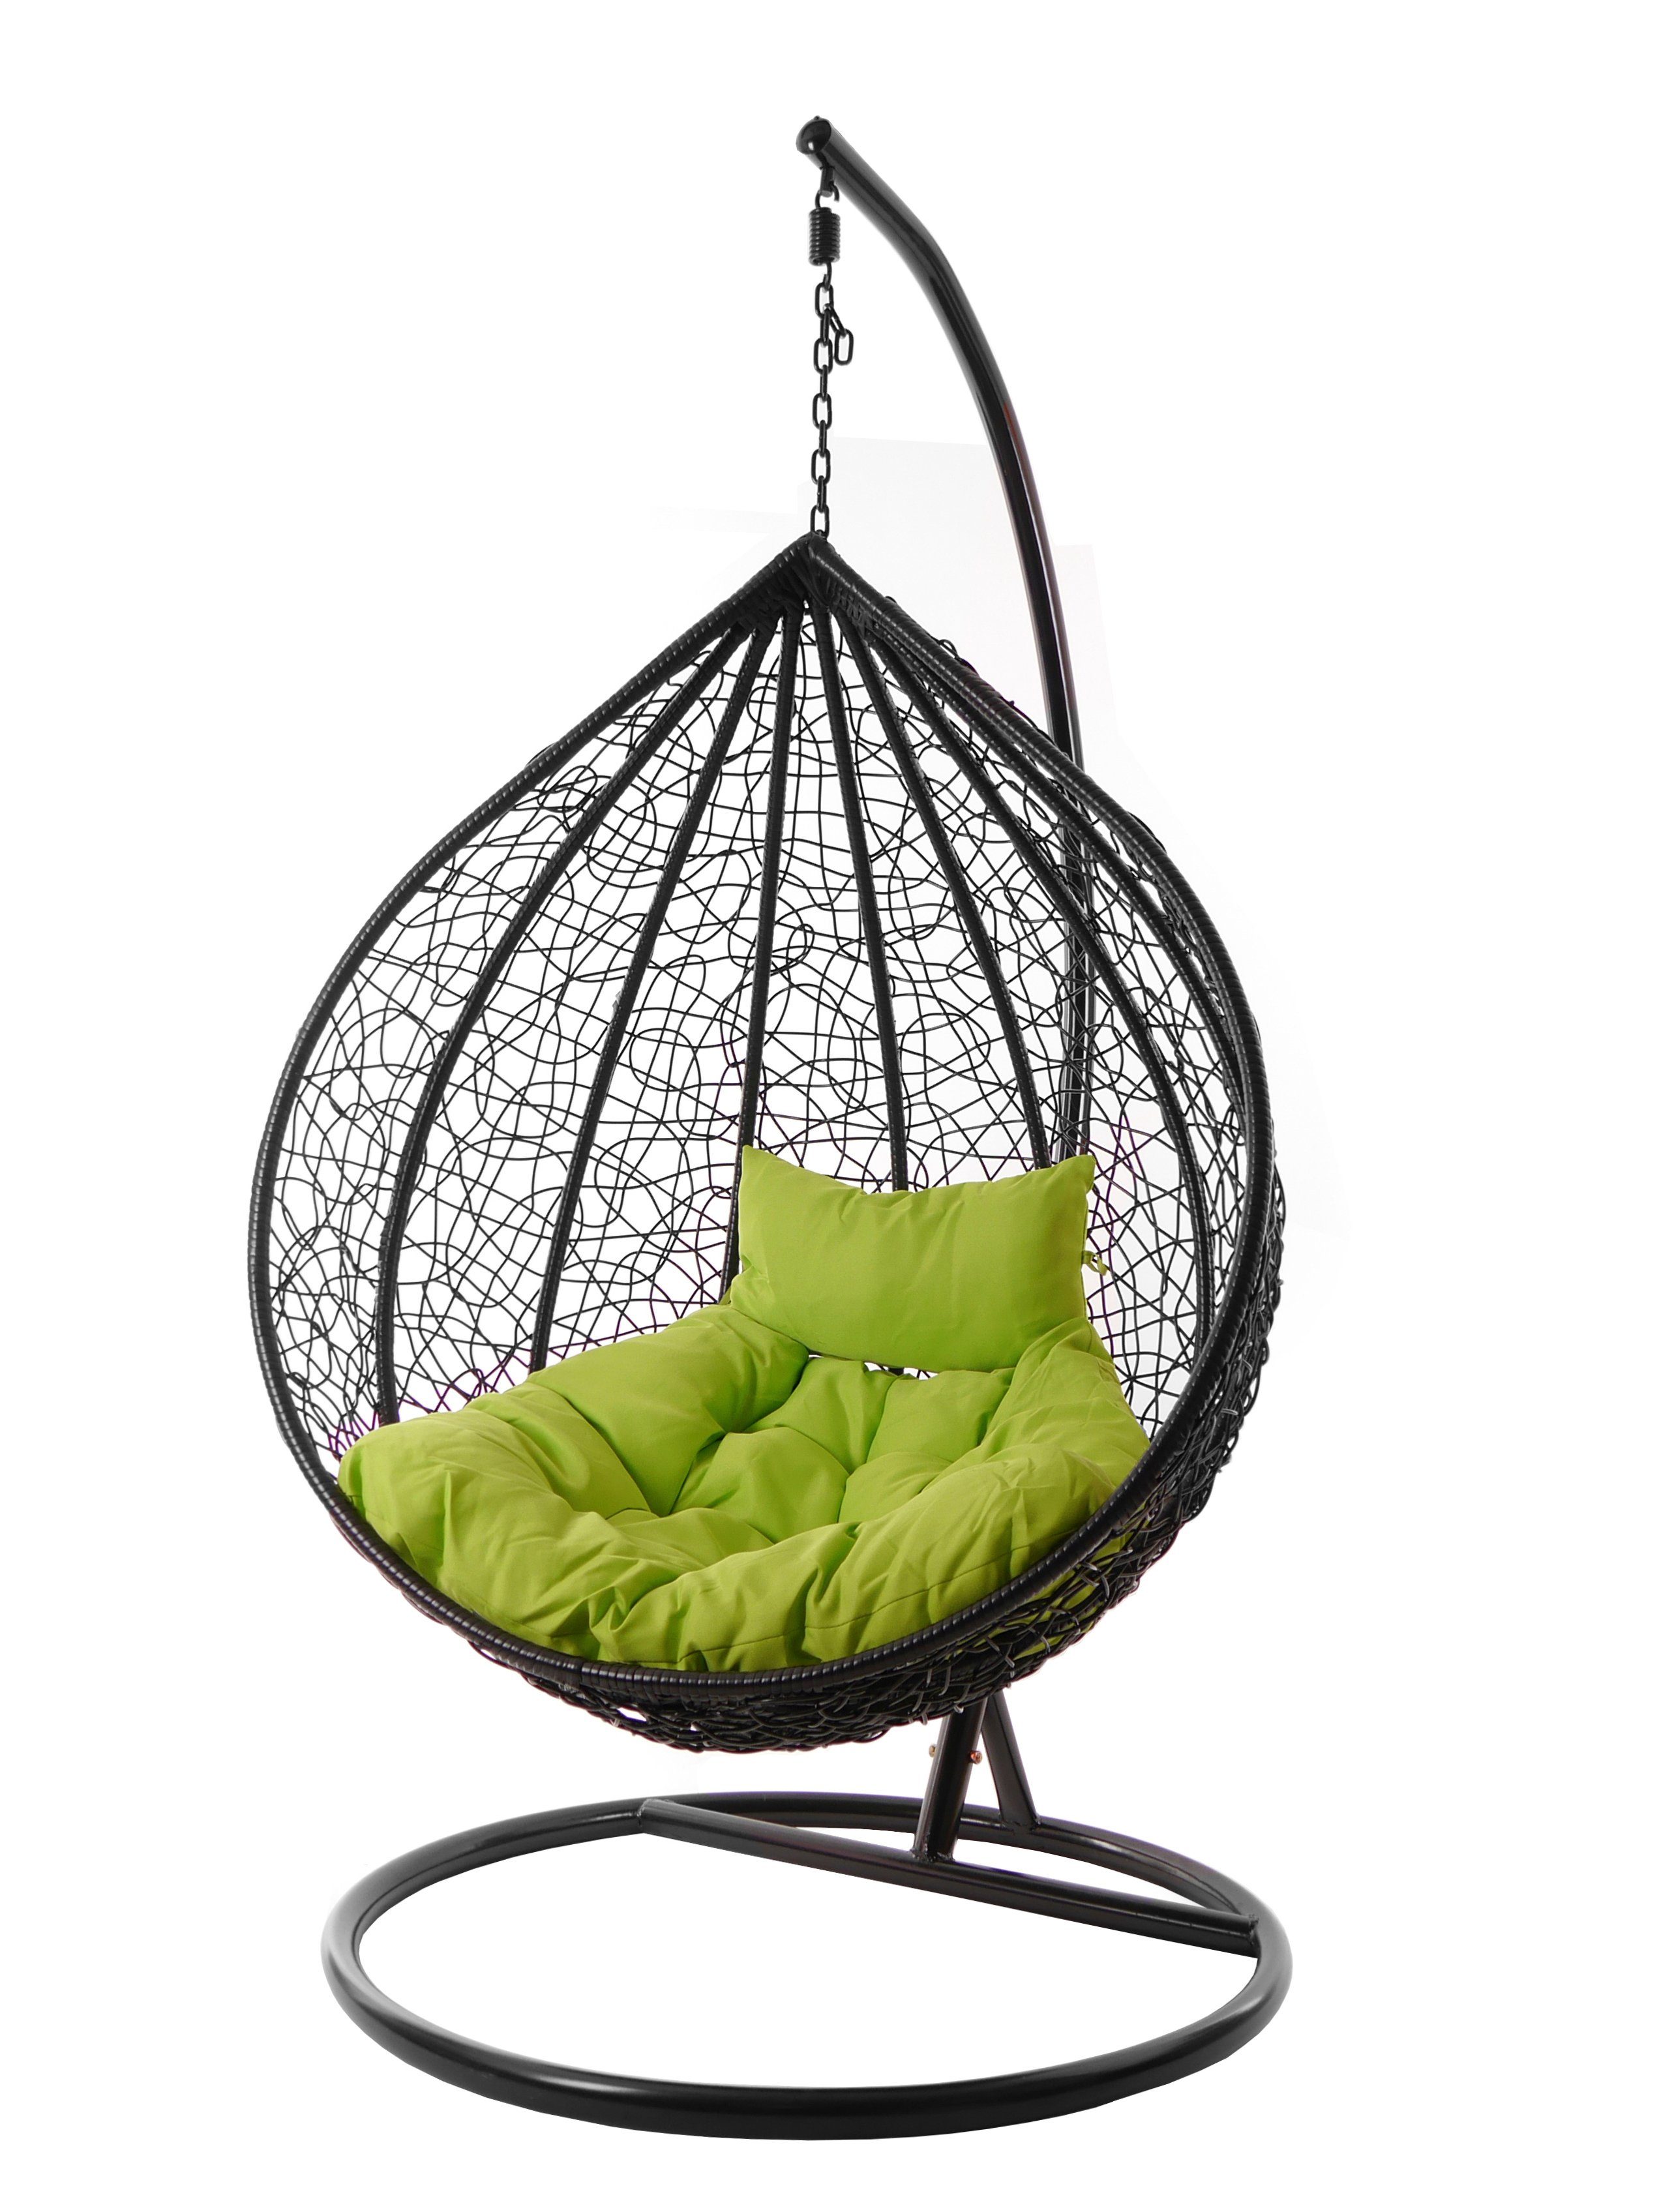 Swing Schwebesessel schwarz, schwarz, apple green) moderner Chair, Hängesessel Gestell (6068 KIDEO edles Hängesessel inklusive Kissen MANACOR apfelgrün und